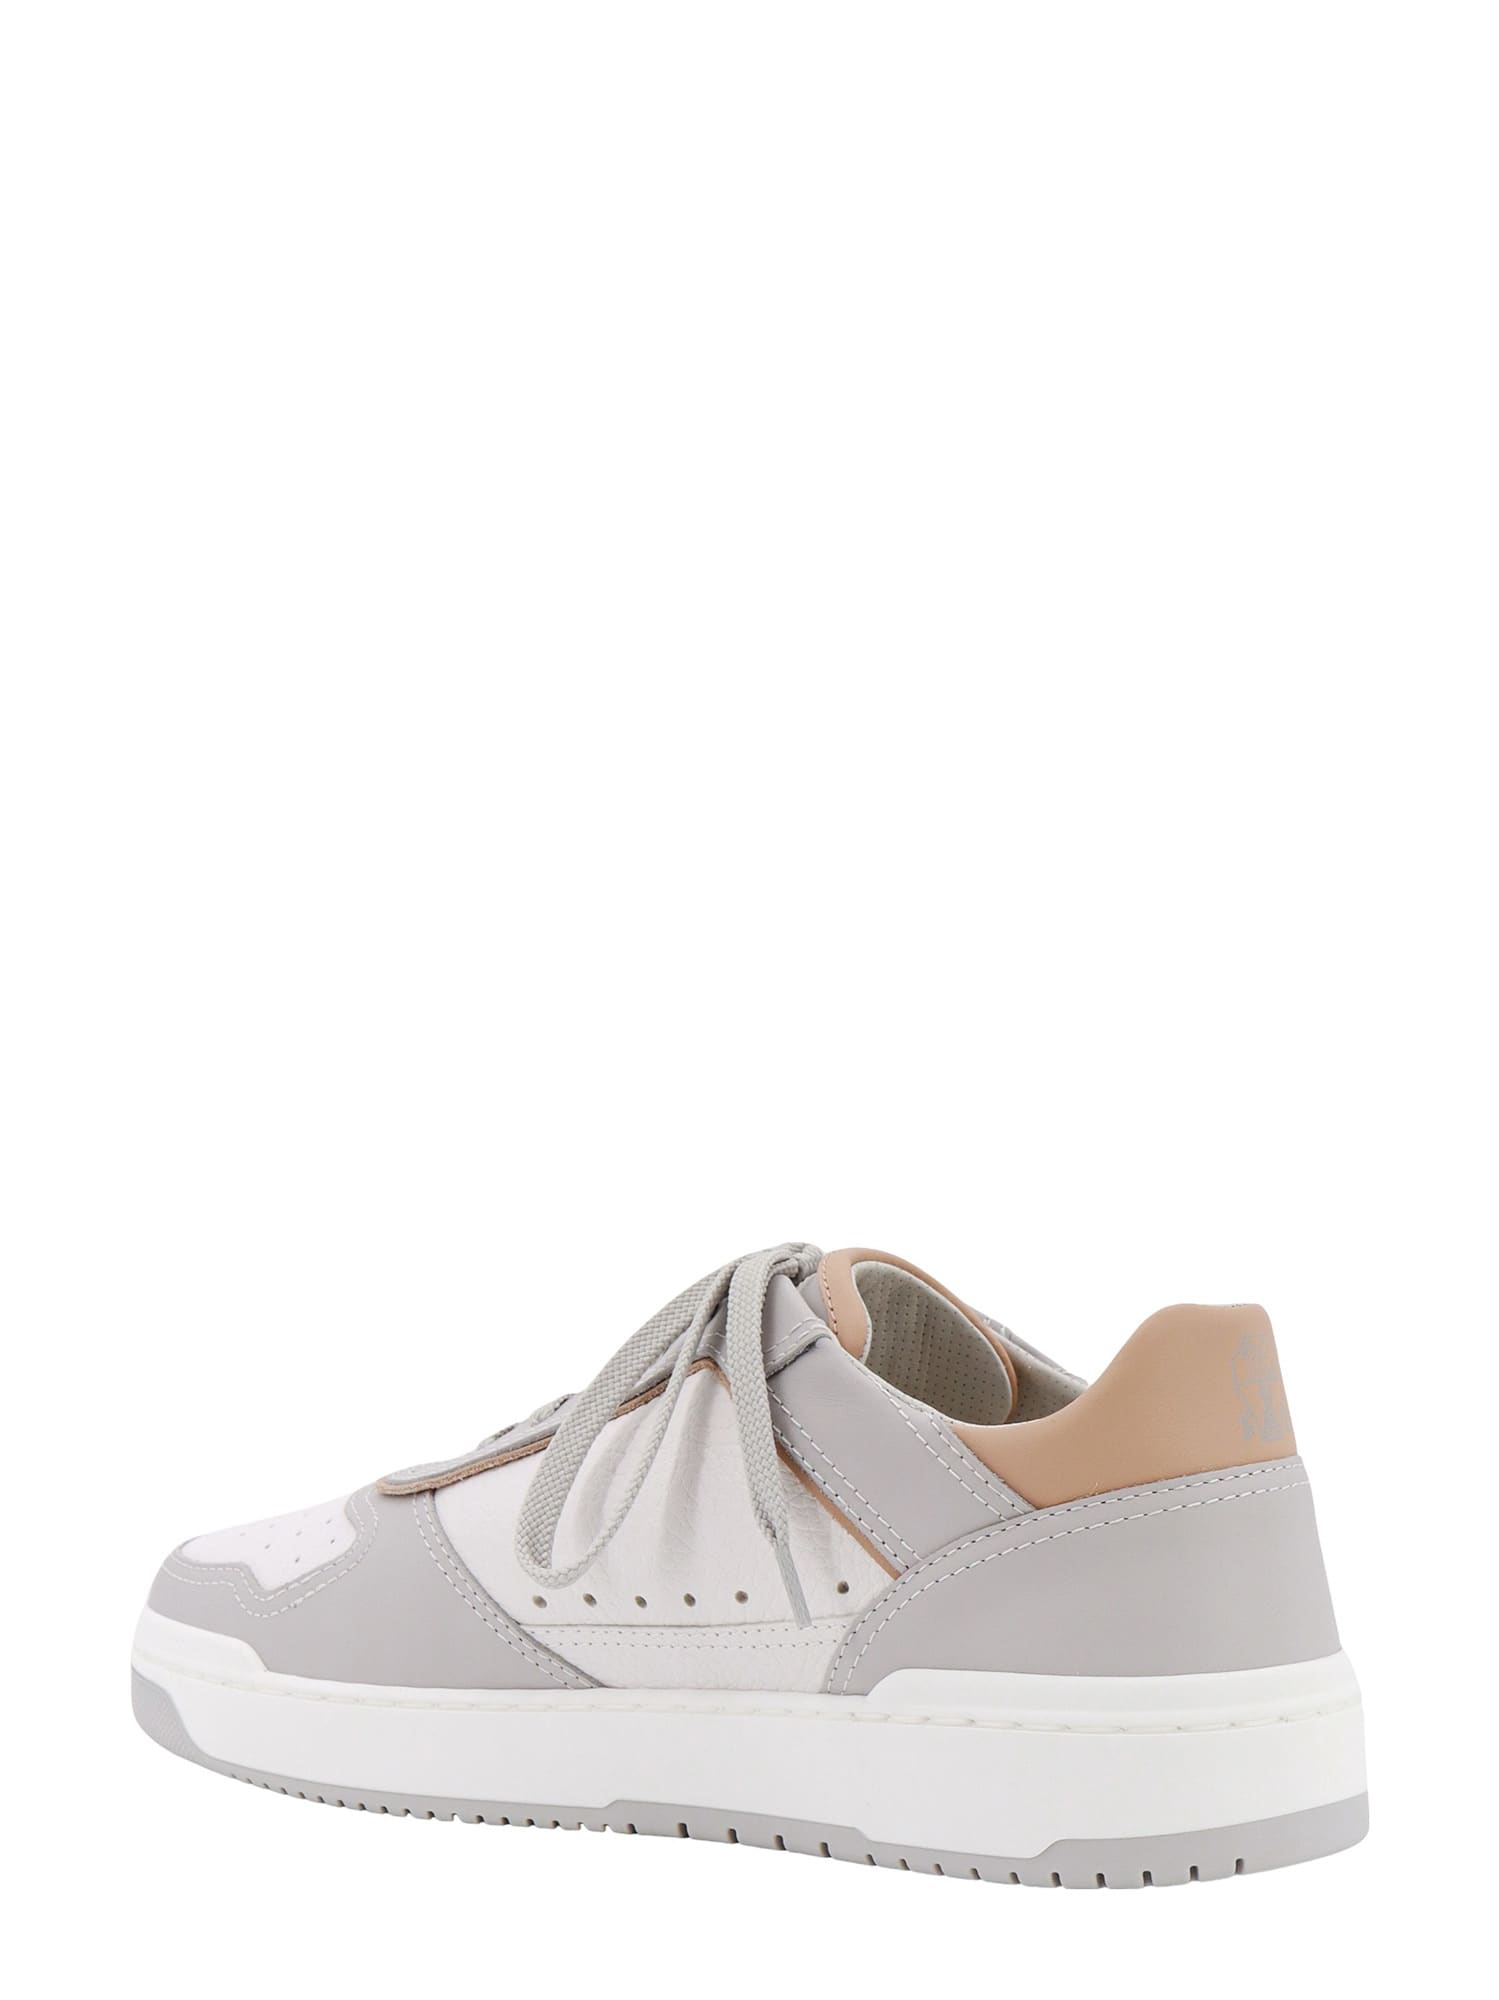 Shop Brunello Cucinelli Sneakers In White/grey